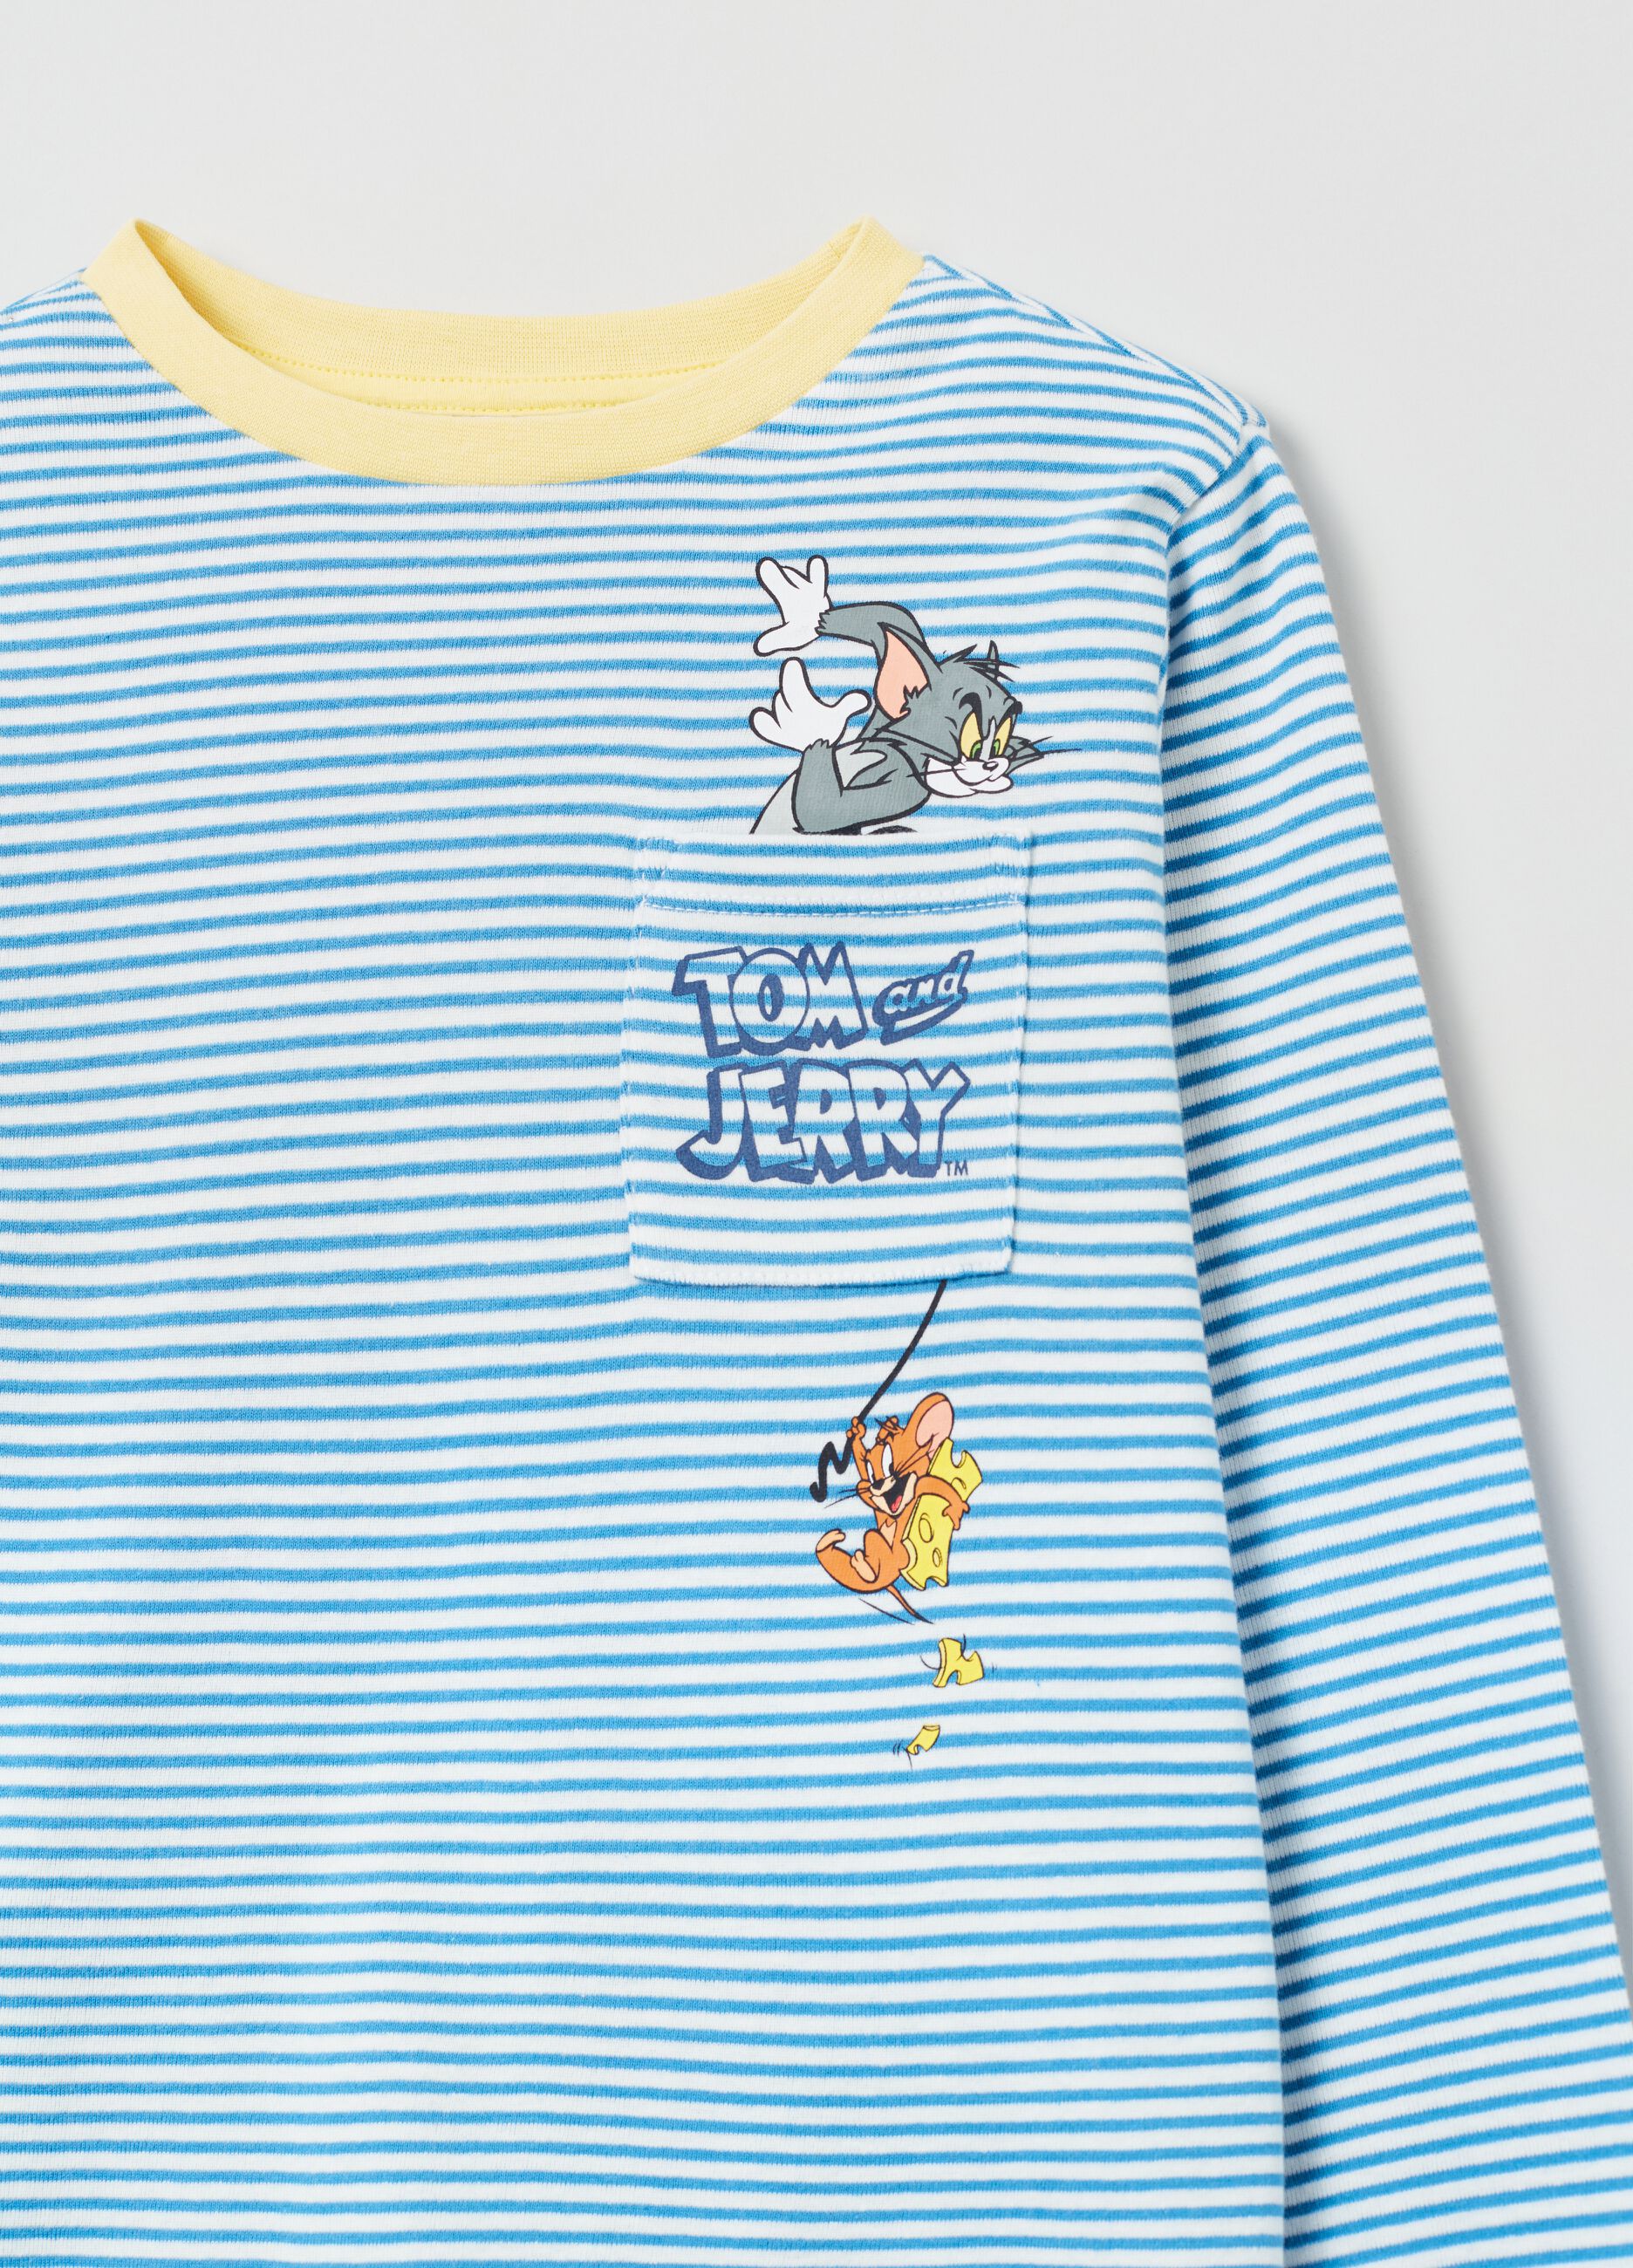 Long cotton pyjamas with Tom & Jerry print